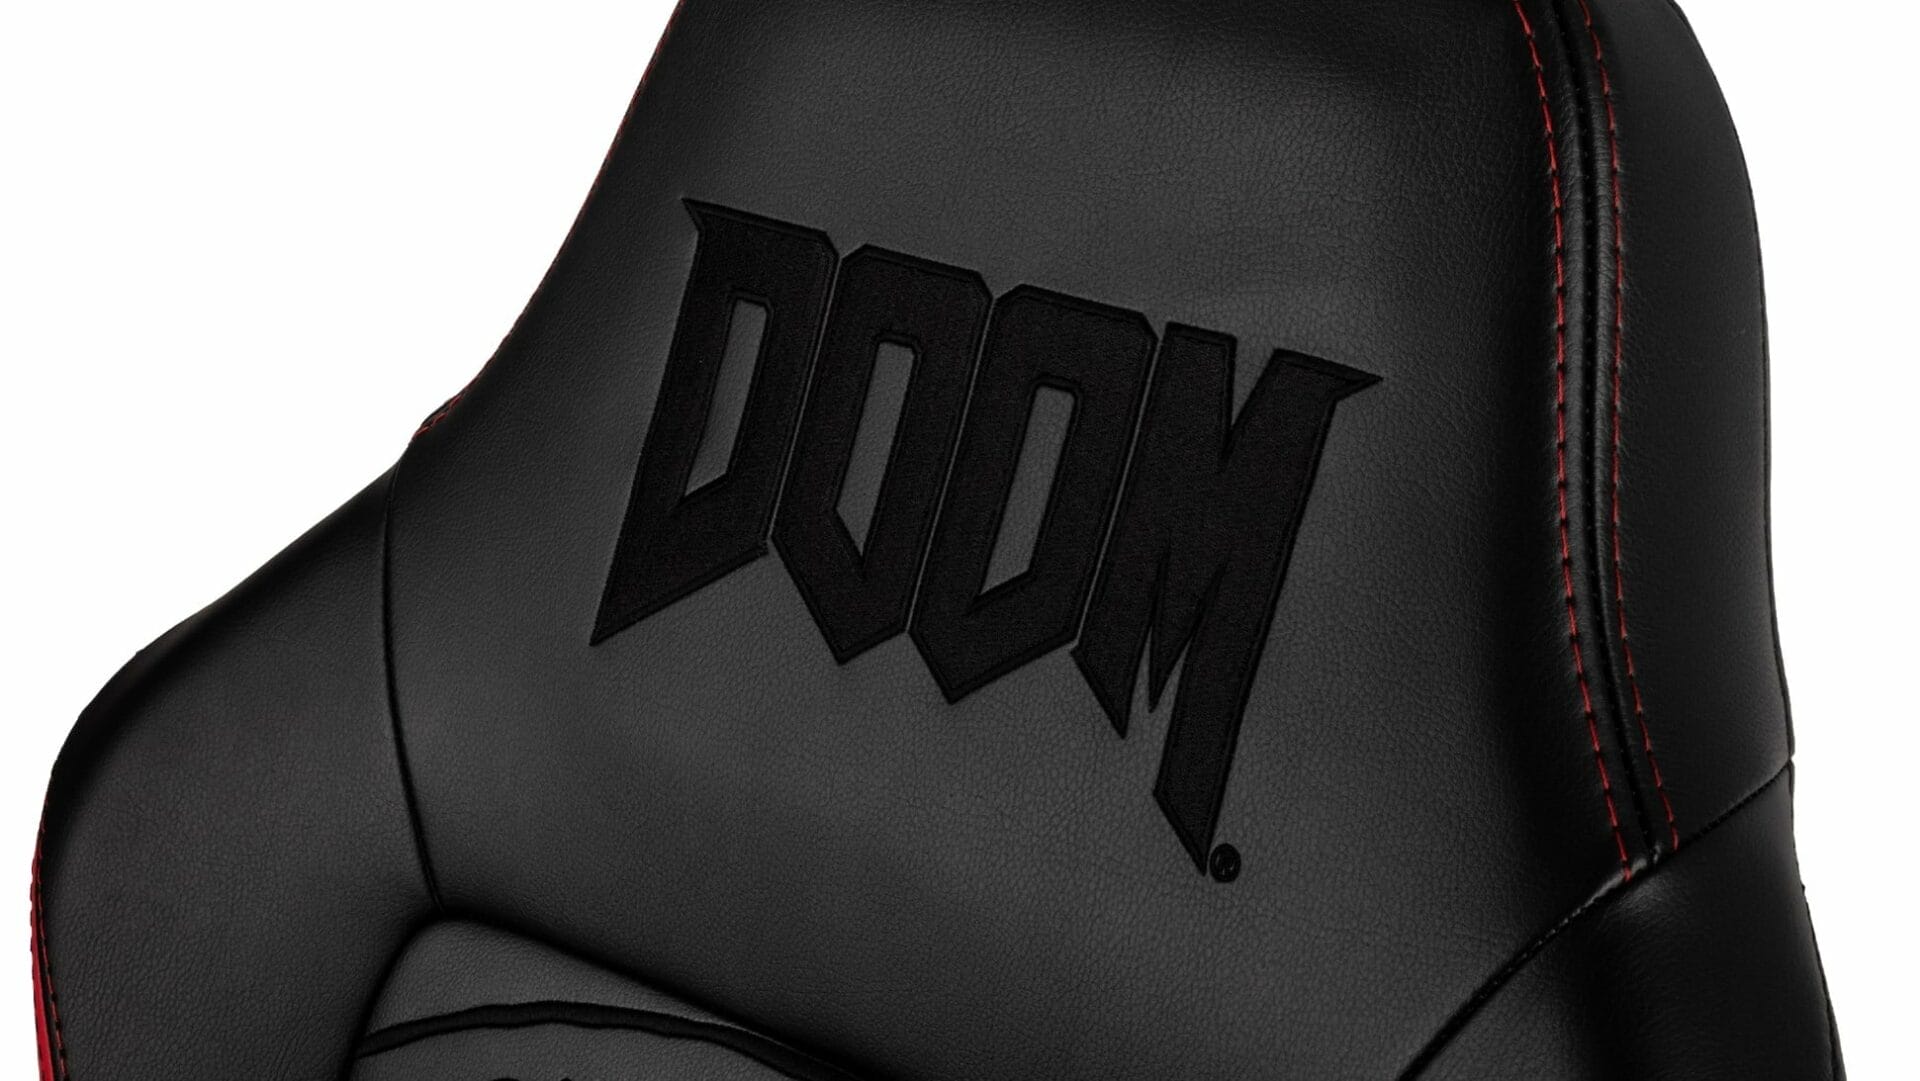 Schickt sieht der Hero in der Doom Edition aus. (Foto: Noblechairs)